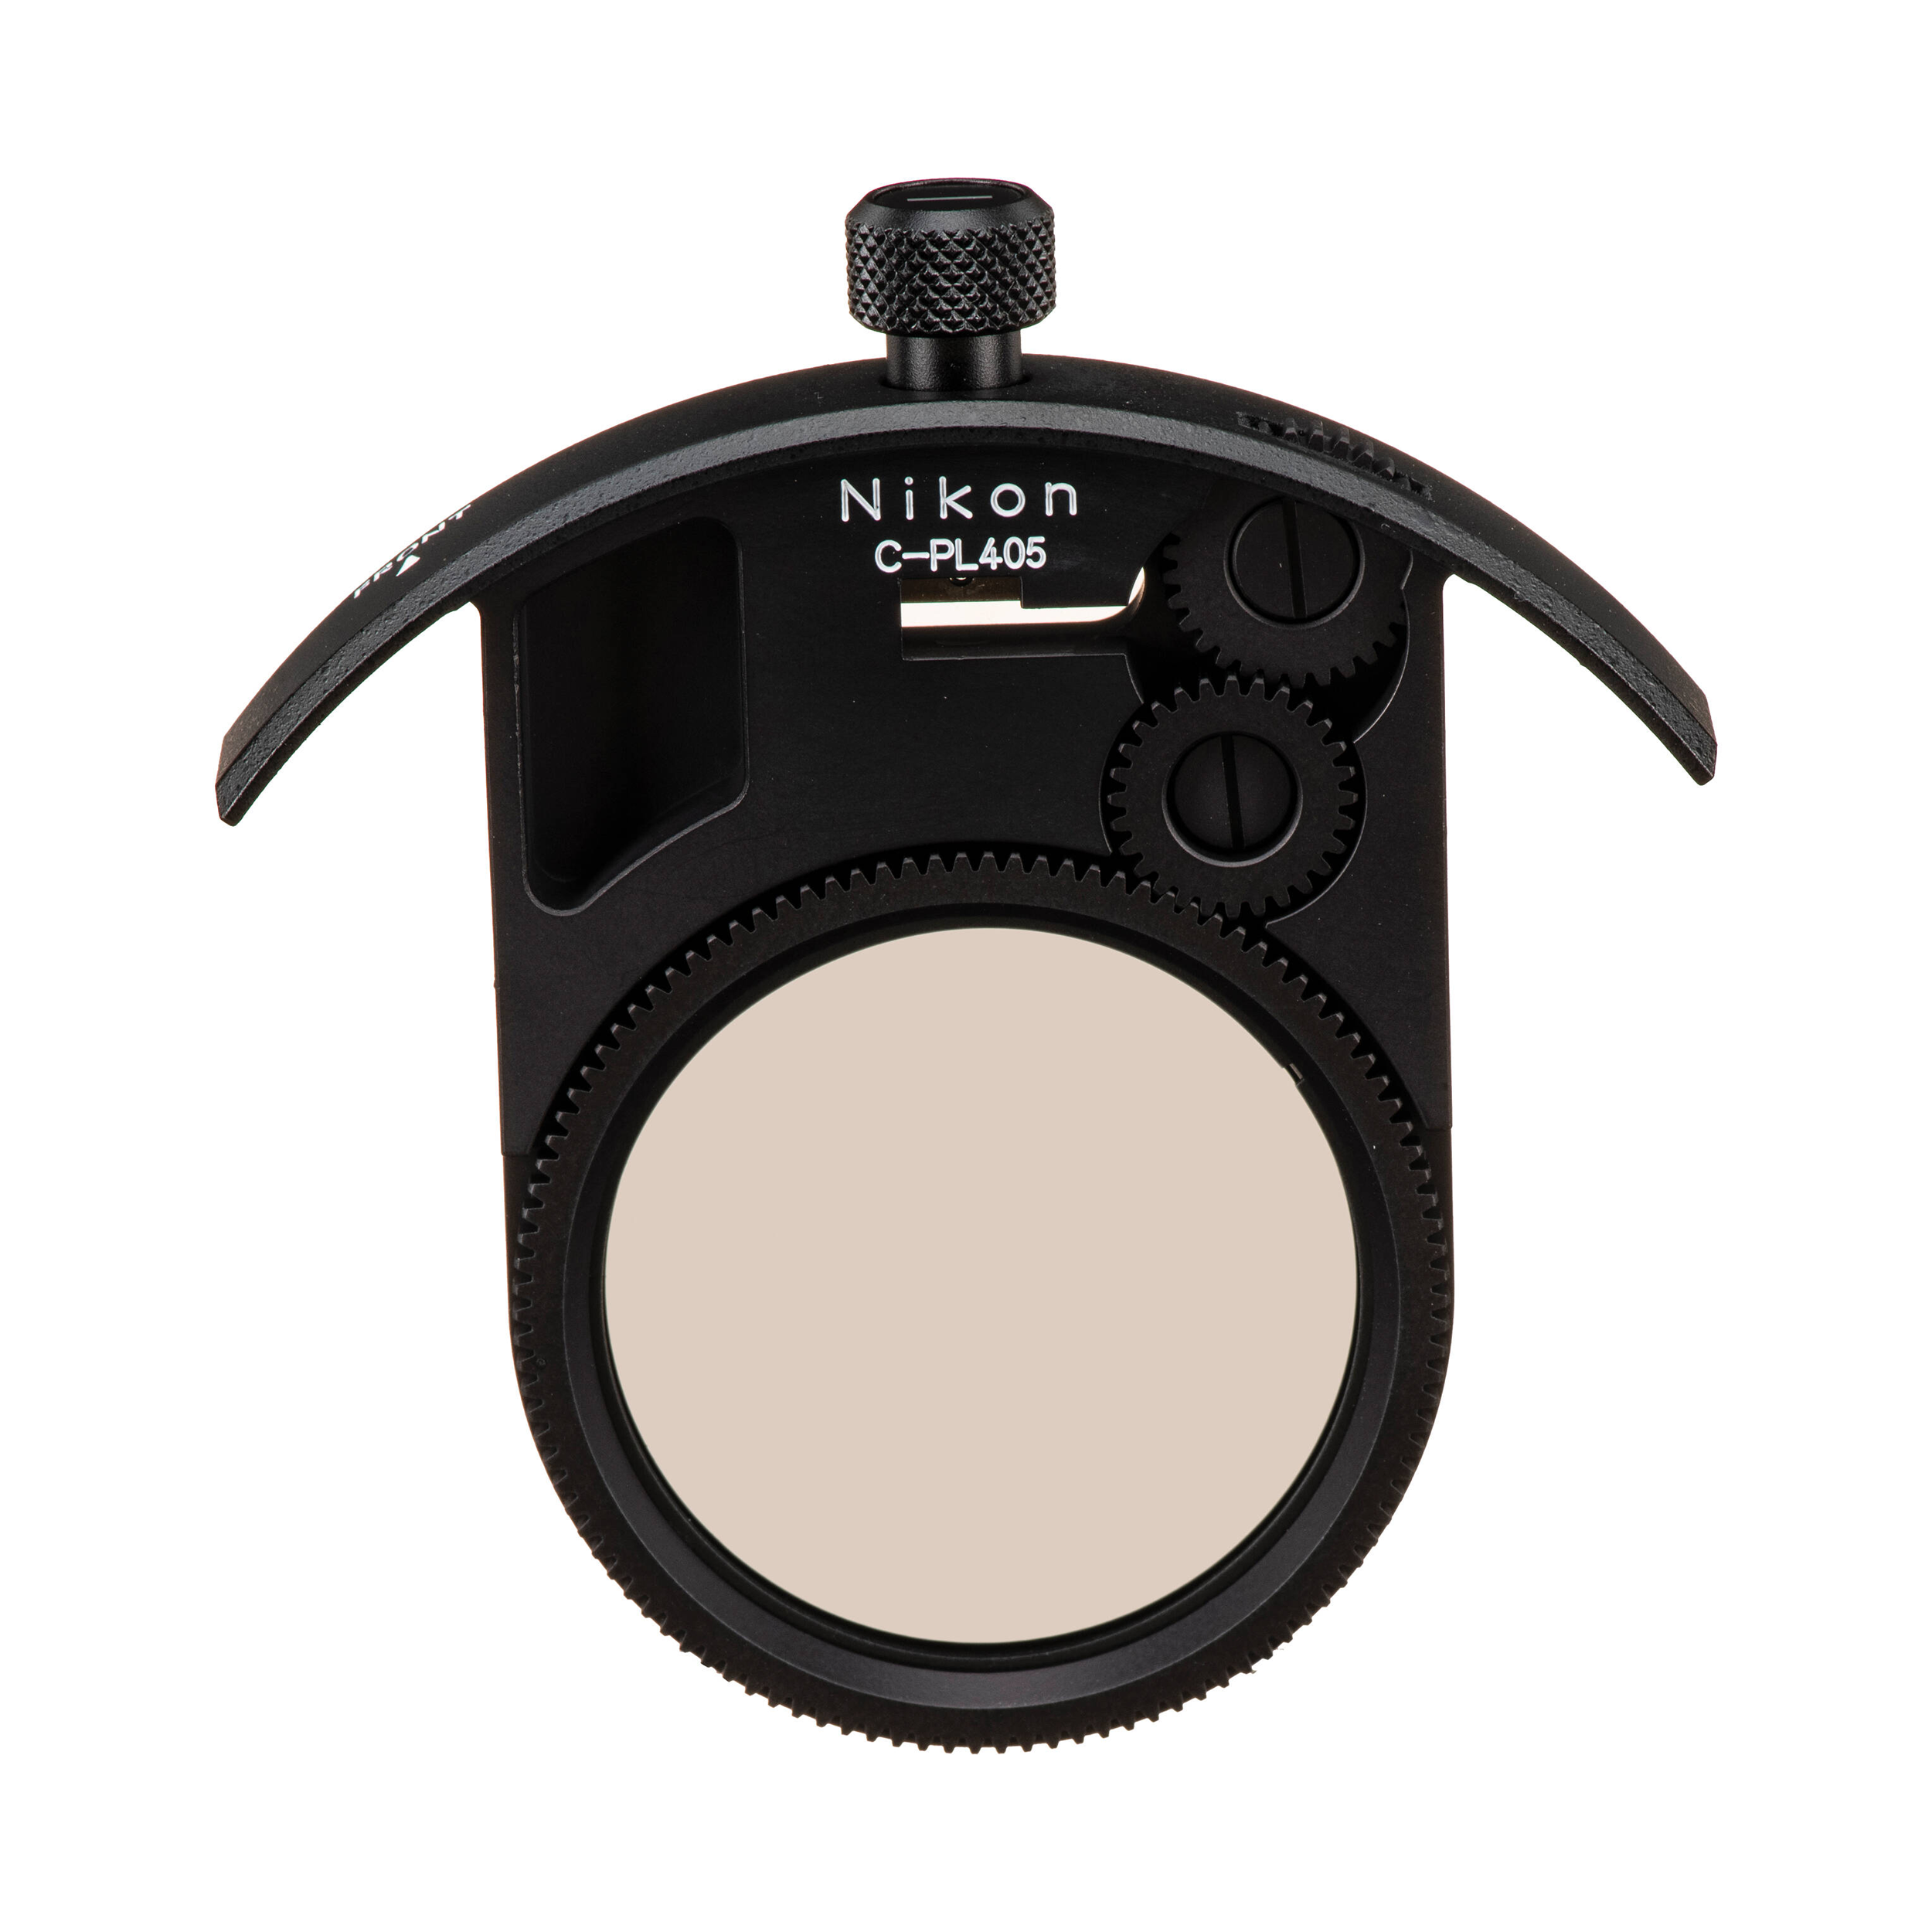 Nikon 40.5mm Drop-in Circular Polarizing Filter for Nikon AF-S NIKKOR 400mm f/2.8E FL ED VR Lens